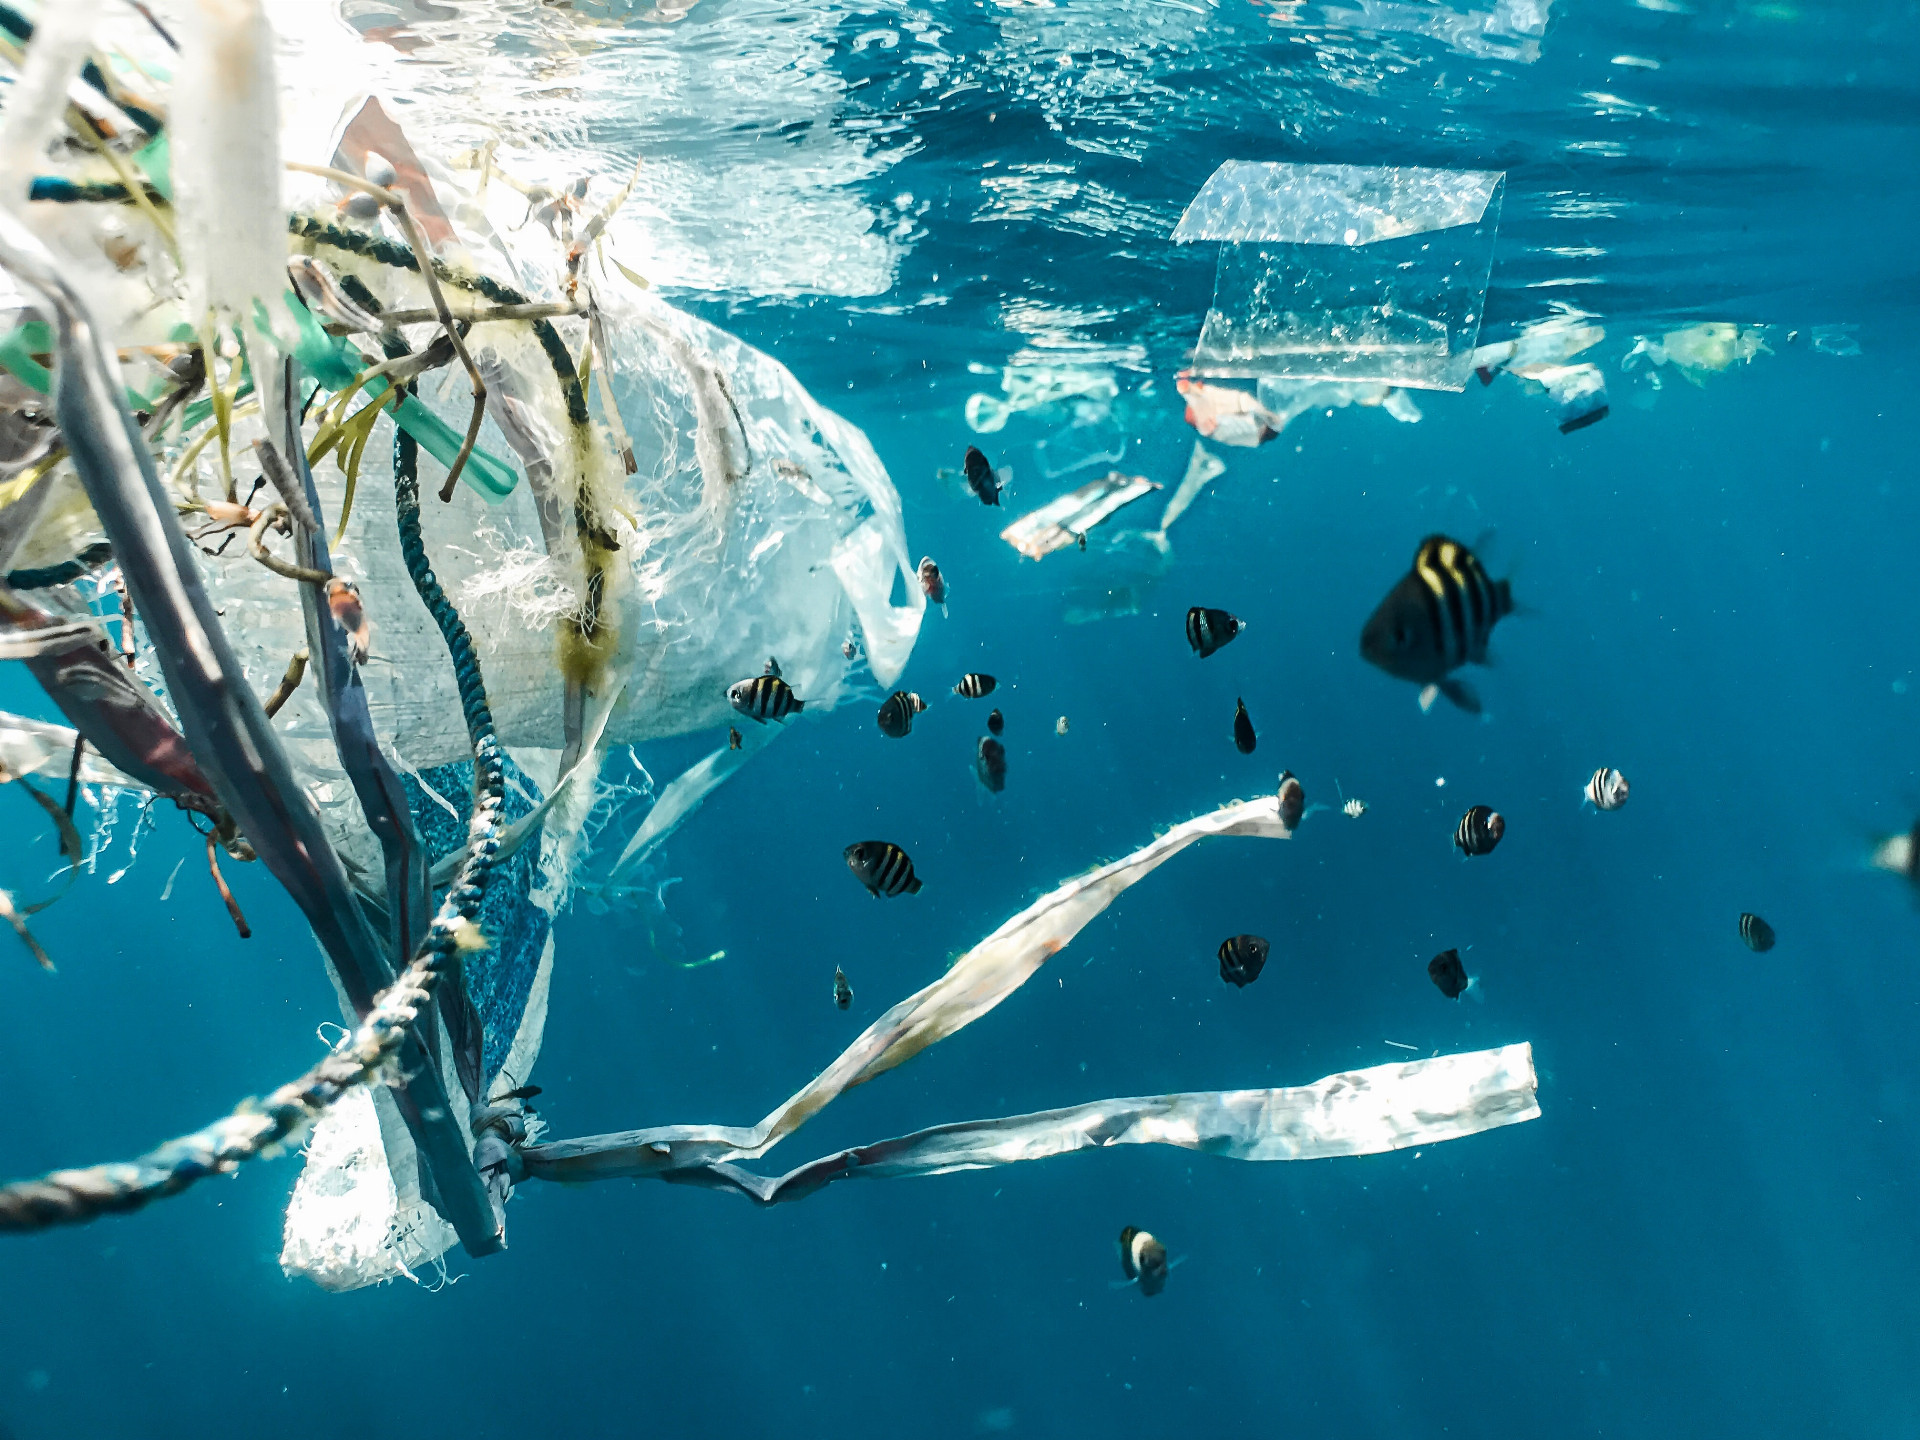 Asi dvadsať percent zo130 miliónov metrických ton plastového odpadu skončilo v našich oceánoch (ilu)